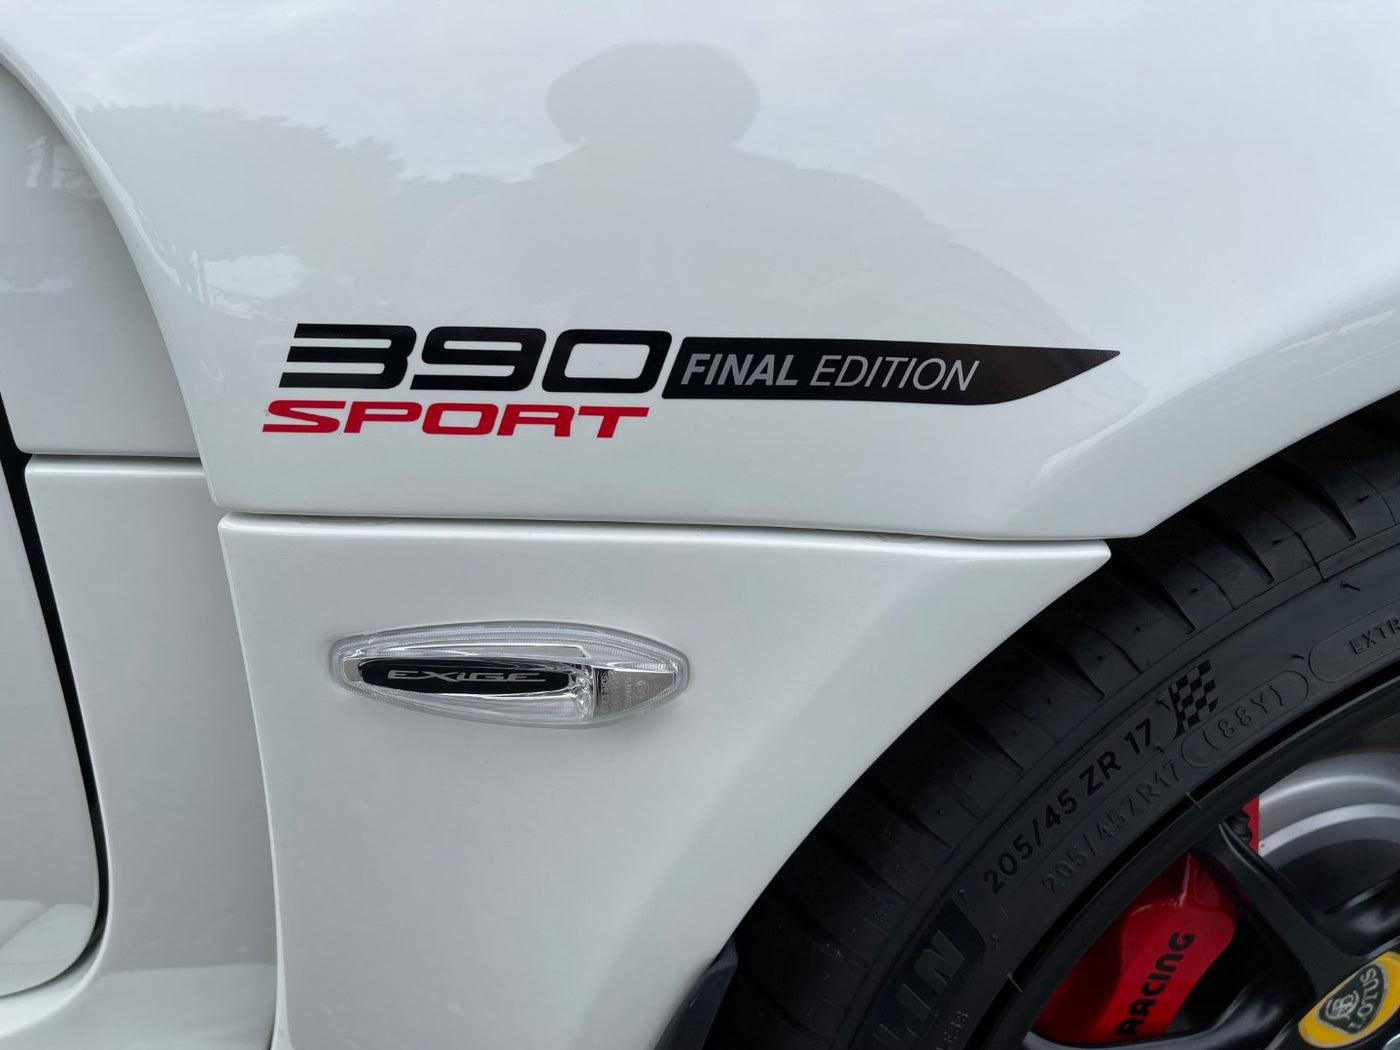 新車未登録 ロータス V6 エキシージ スポーツ390 Final Edition 2022年モデル メタリックホワイト